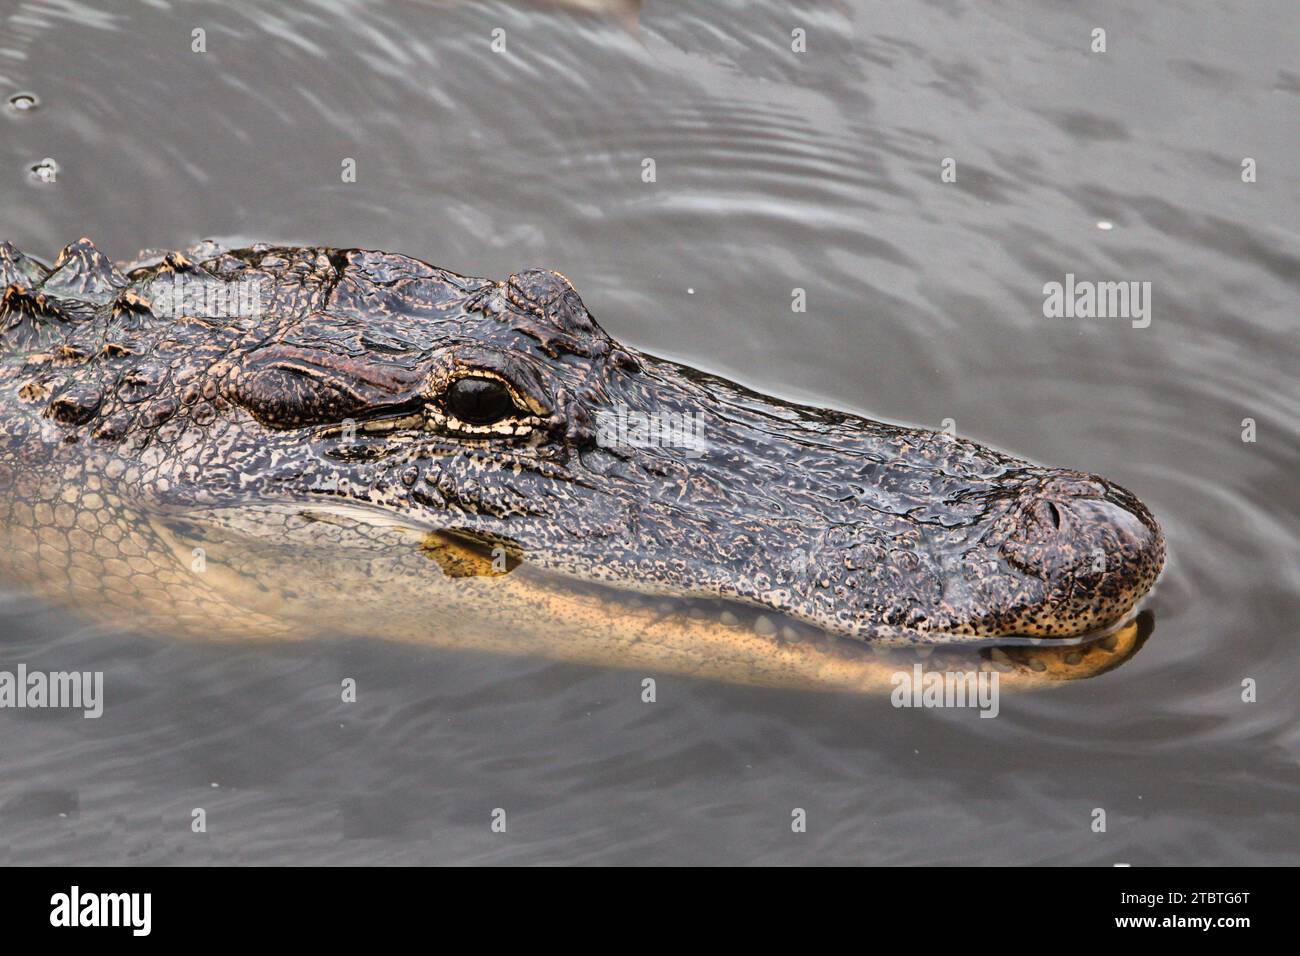 Eine Nahaufnahme eines großen Alligators, der in einem Gewässer liegt und direkt in die Kamera blickt, mit geöffneten kräftigen Backen Stockfoto